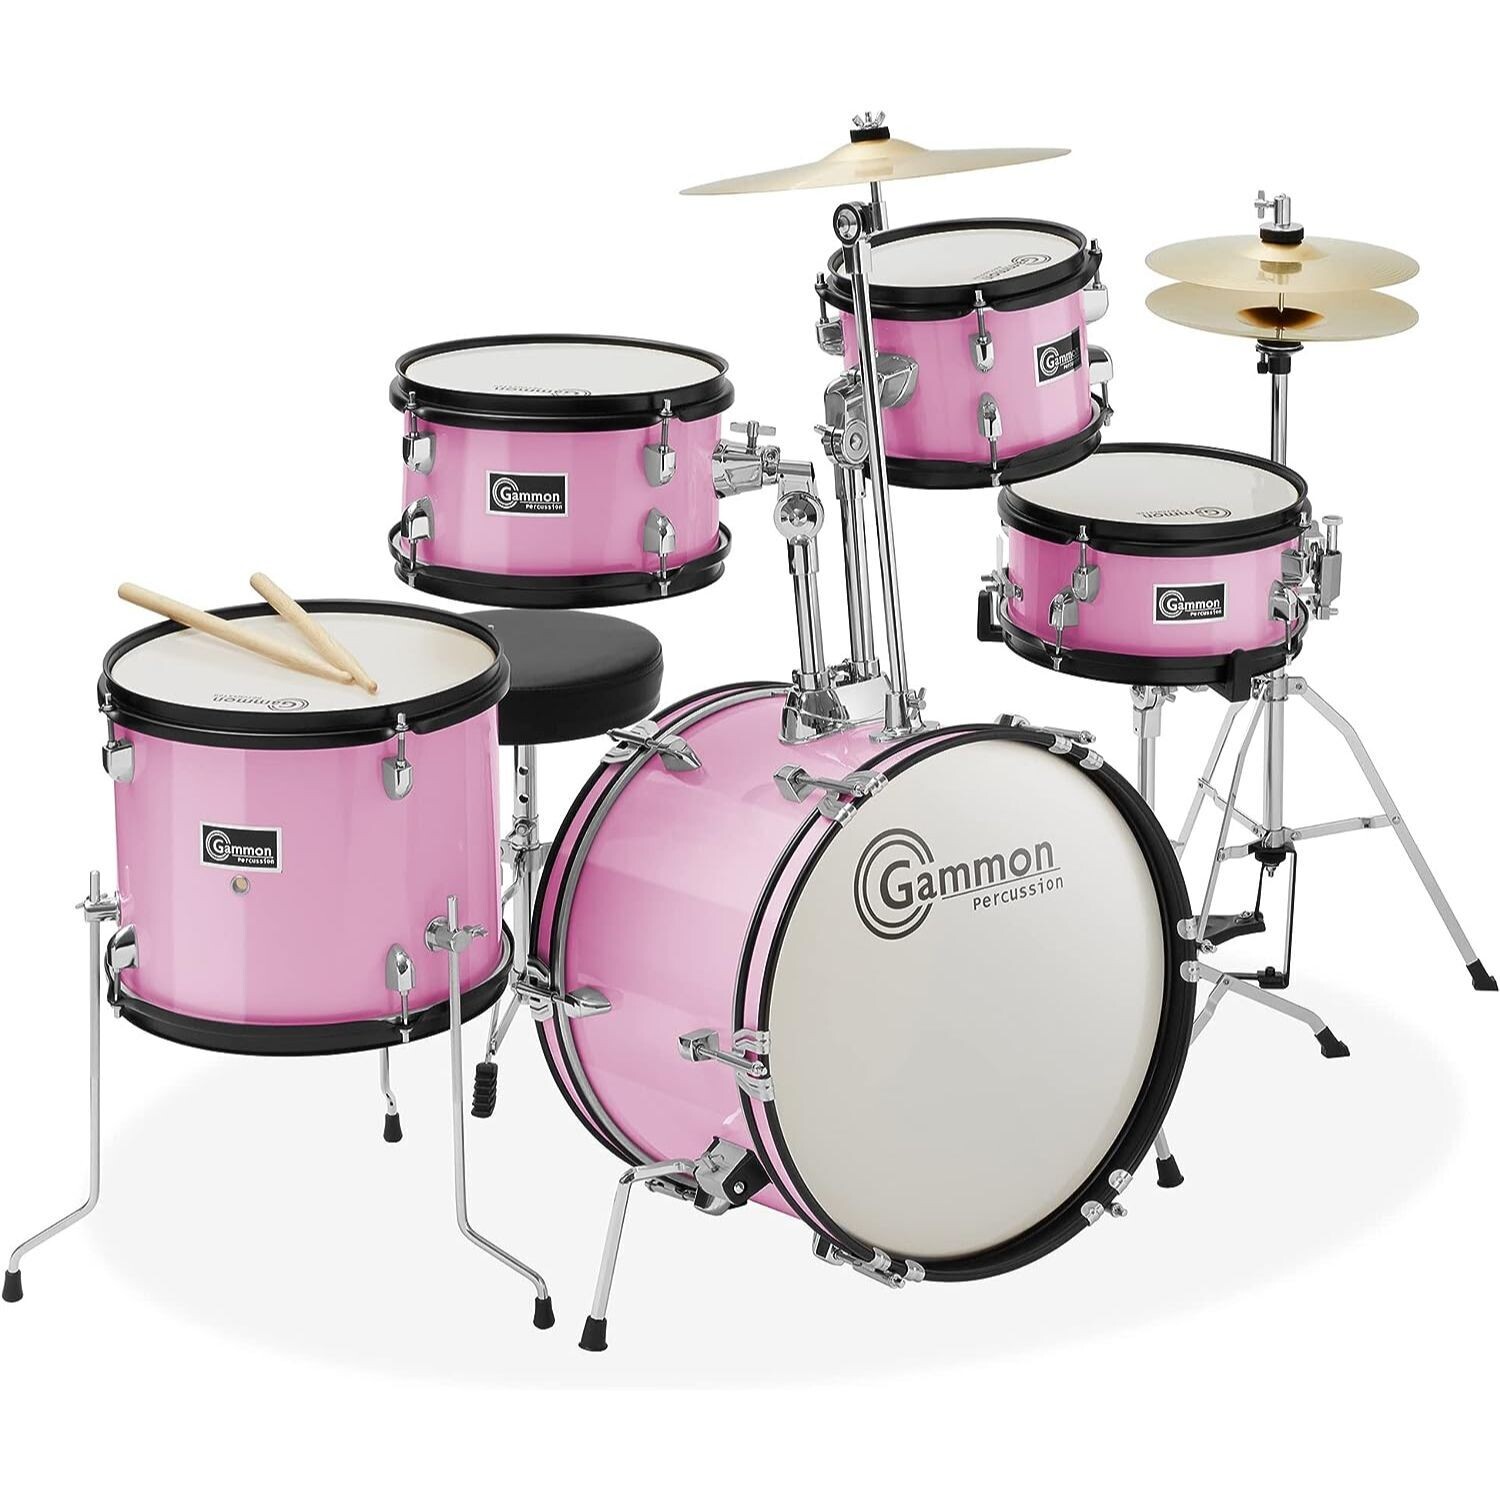 LW Essentials Basic 5-Piece Junior Kids Drum Set with Hardware - Pink